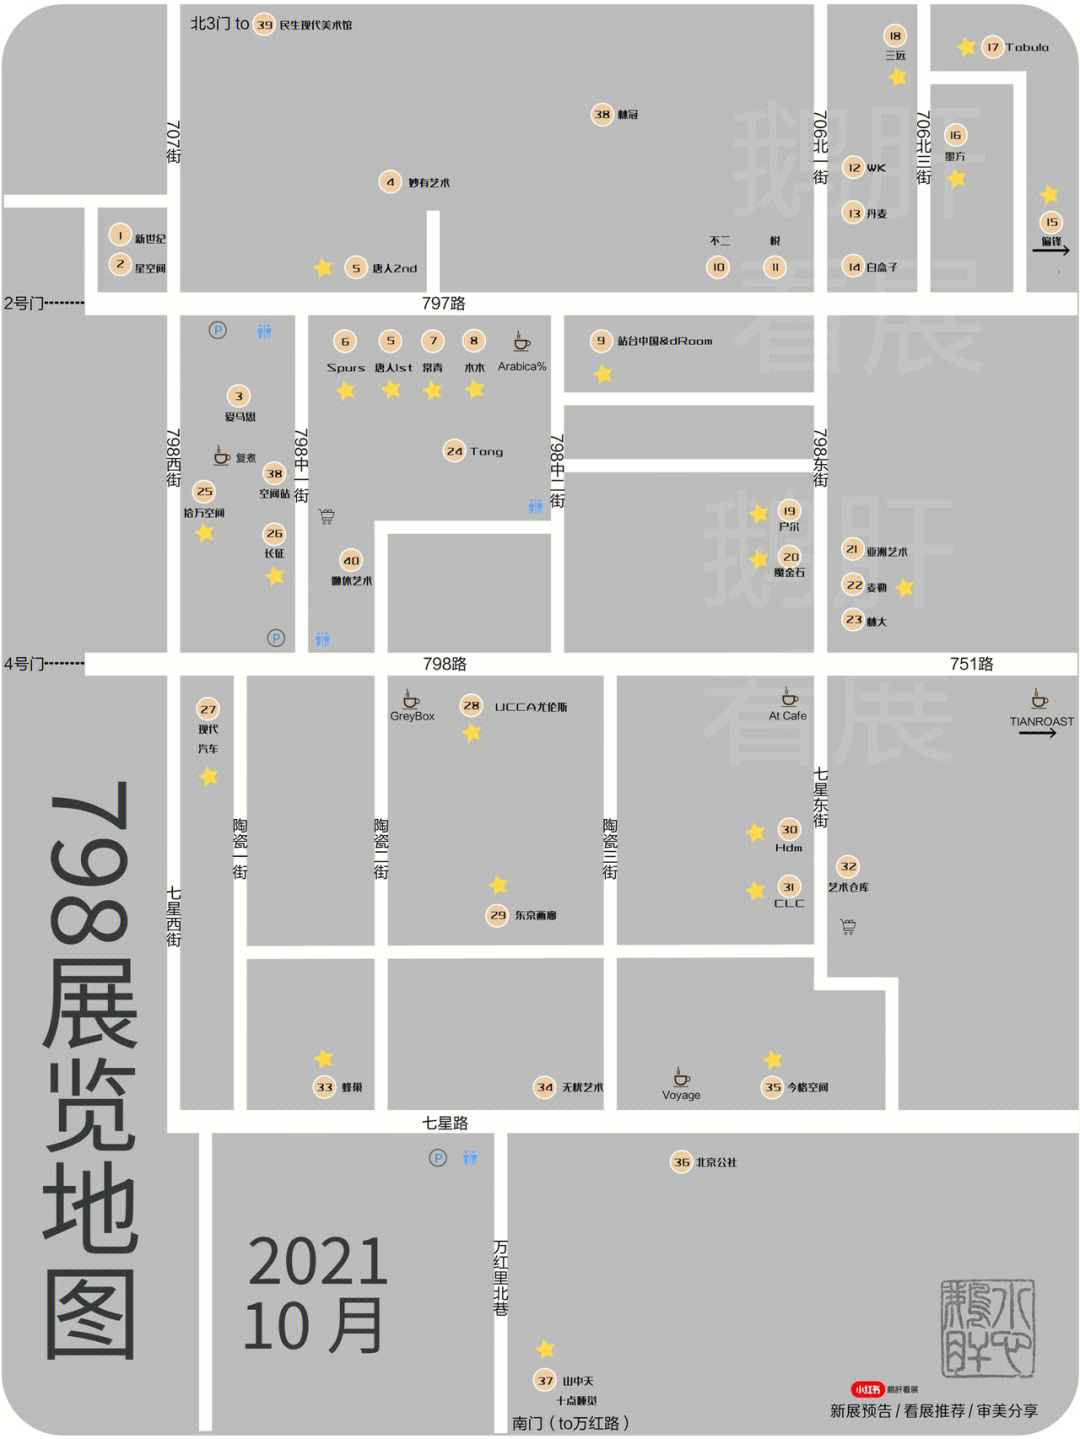 798地图标星为有展,共收录17场,合理规划·7415蜂巢当代艺术中心